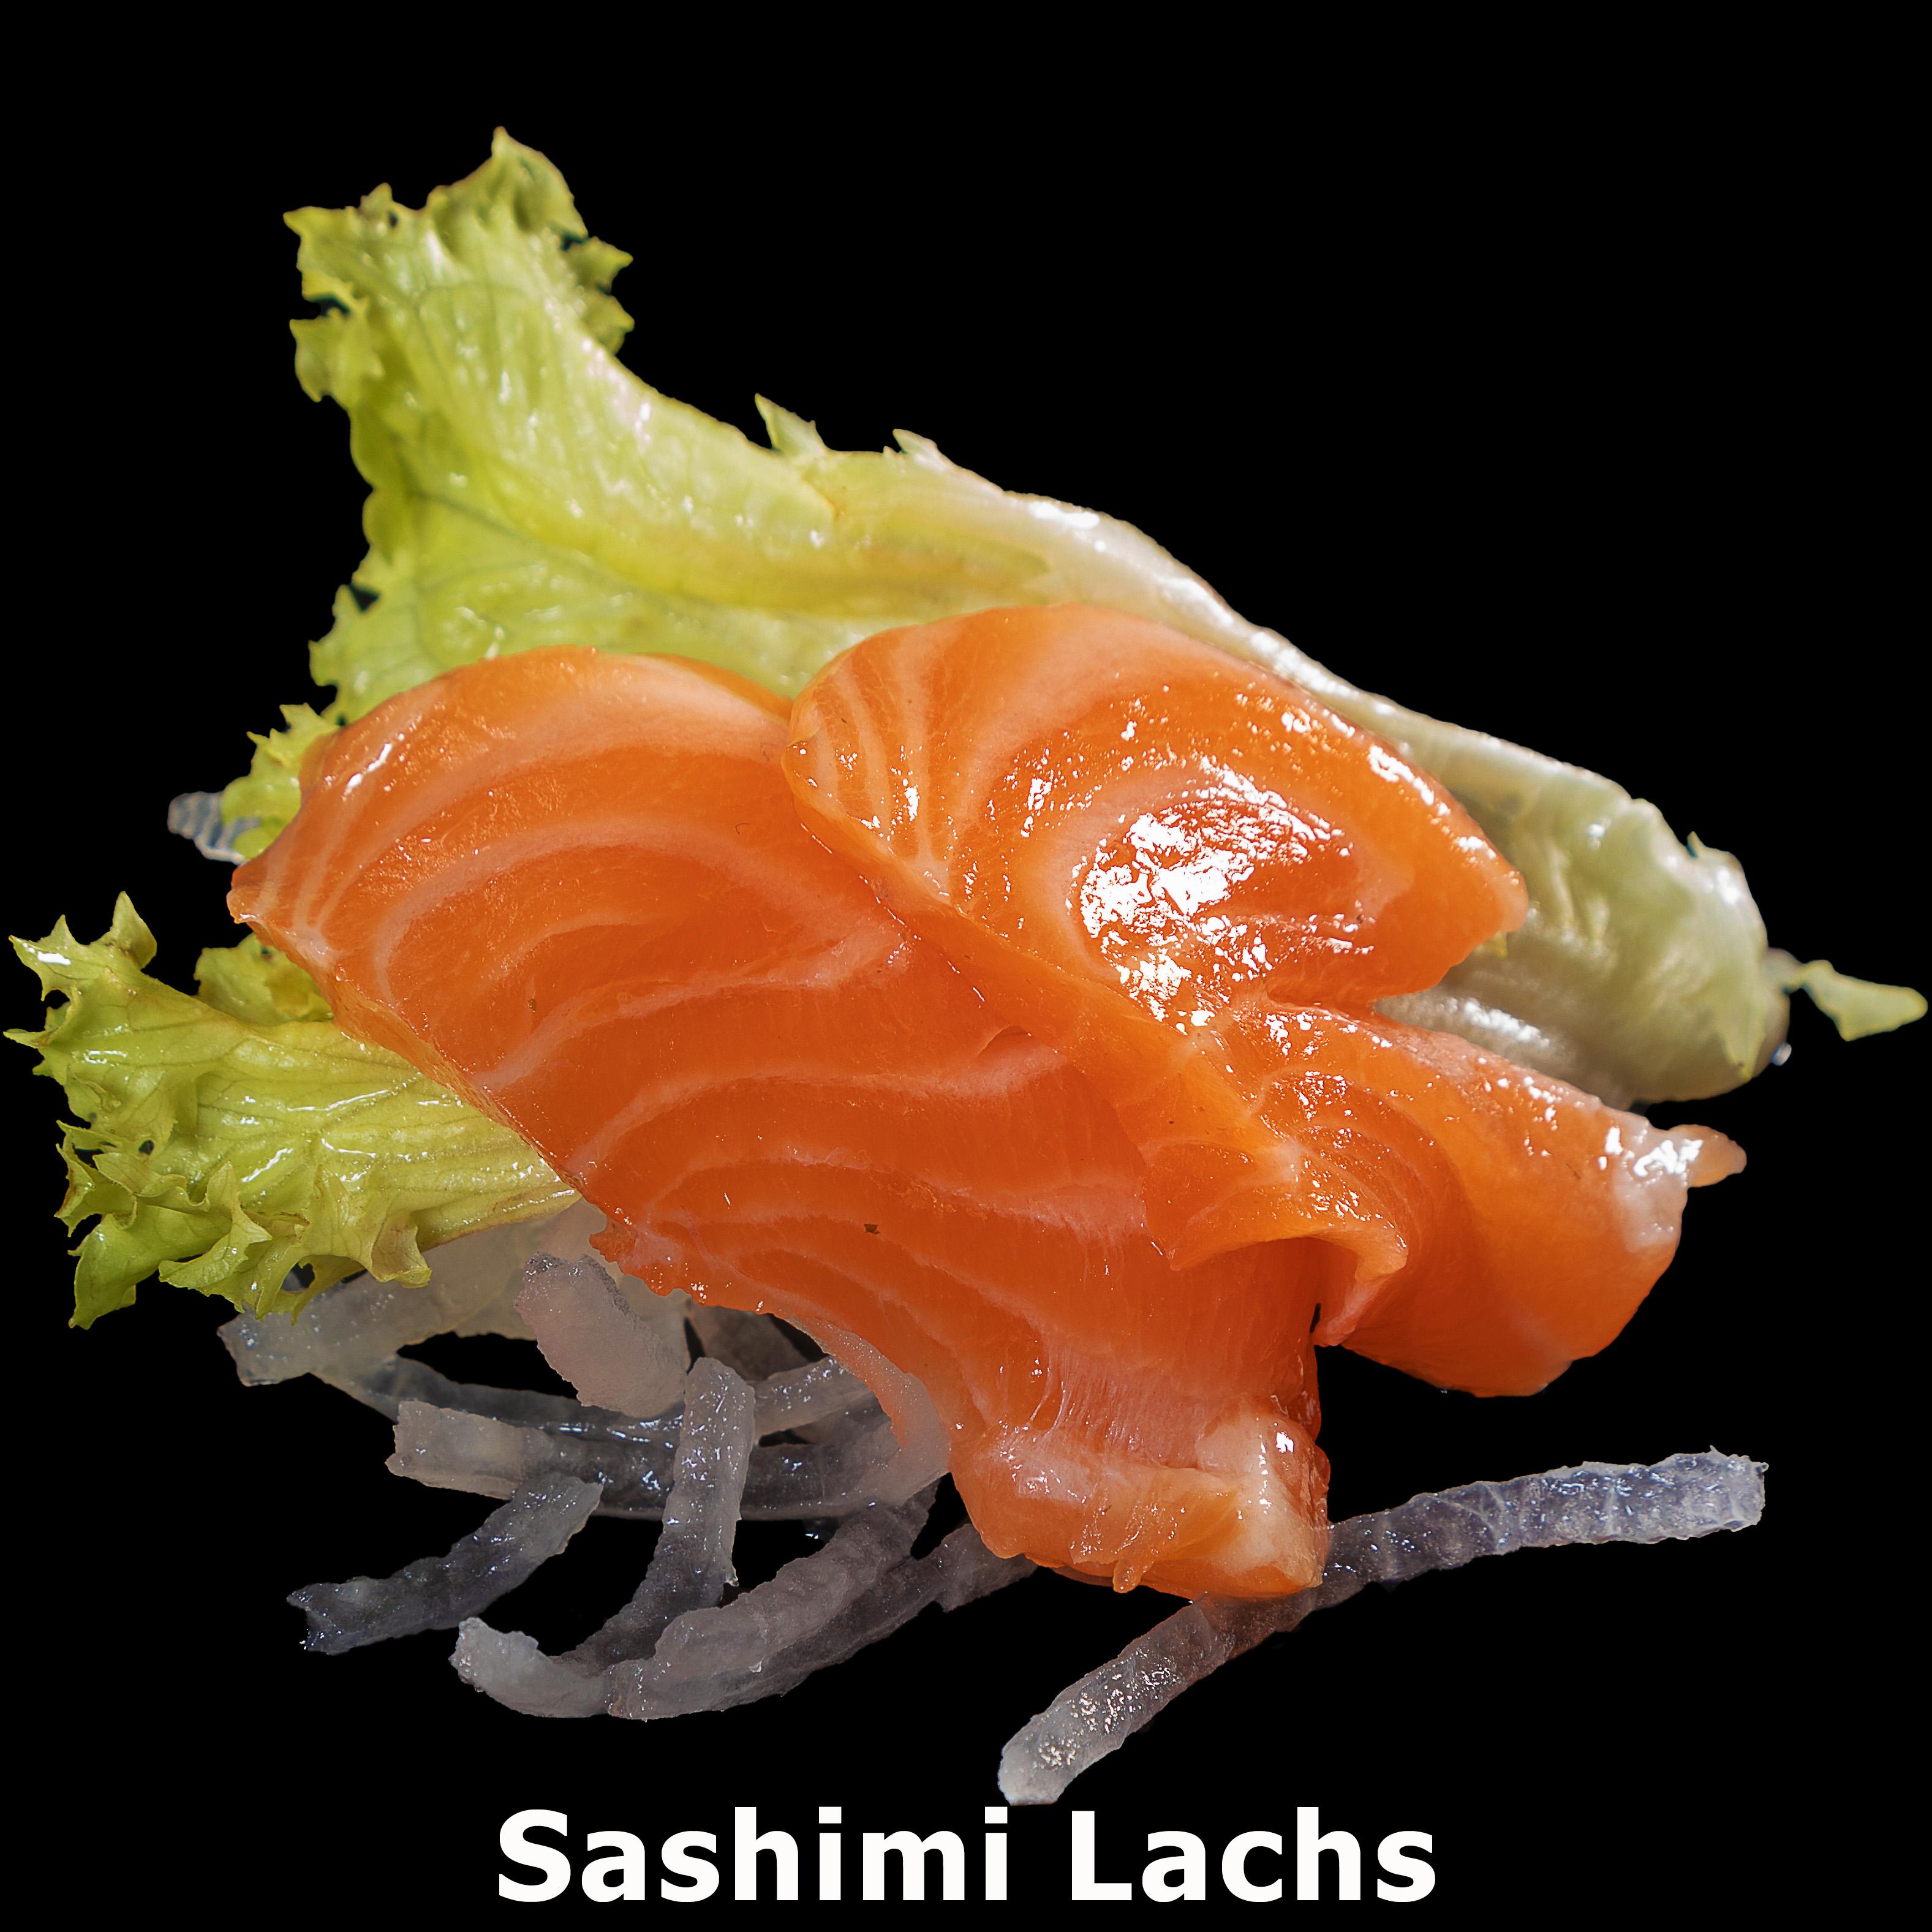 71. Sashimi Lachs